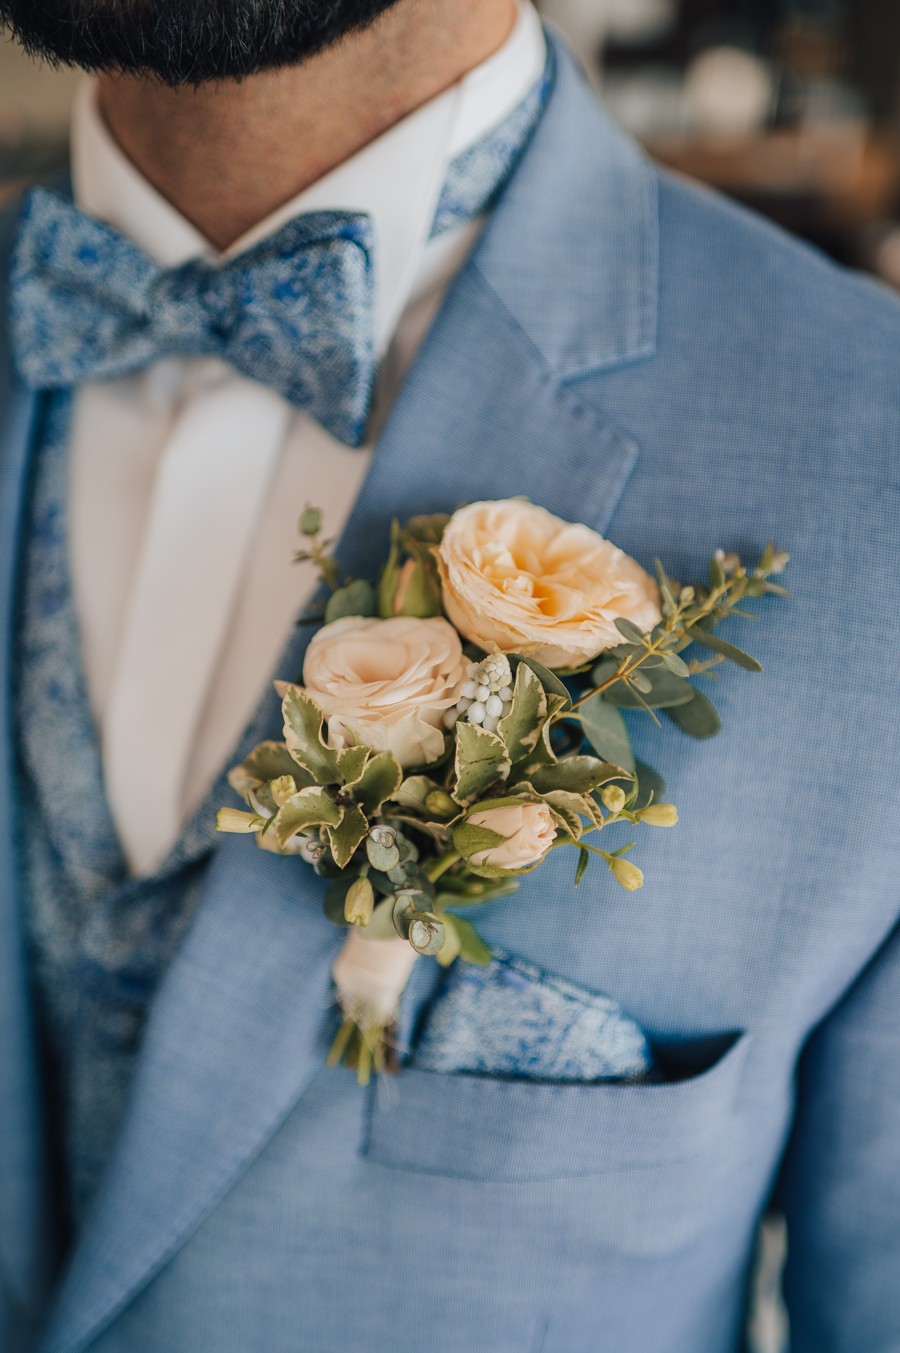 Modrý oblek s květinovou korsáží do klopy.